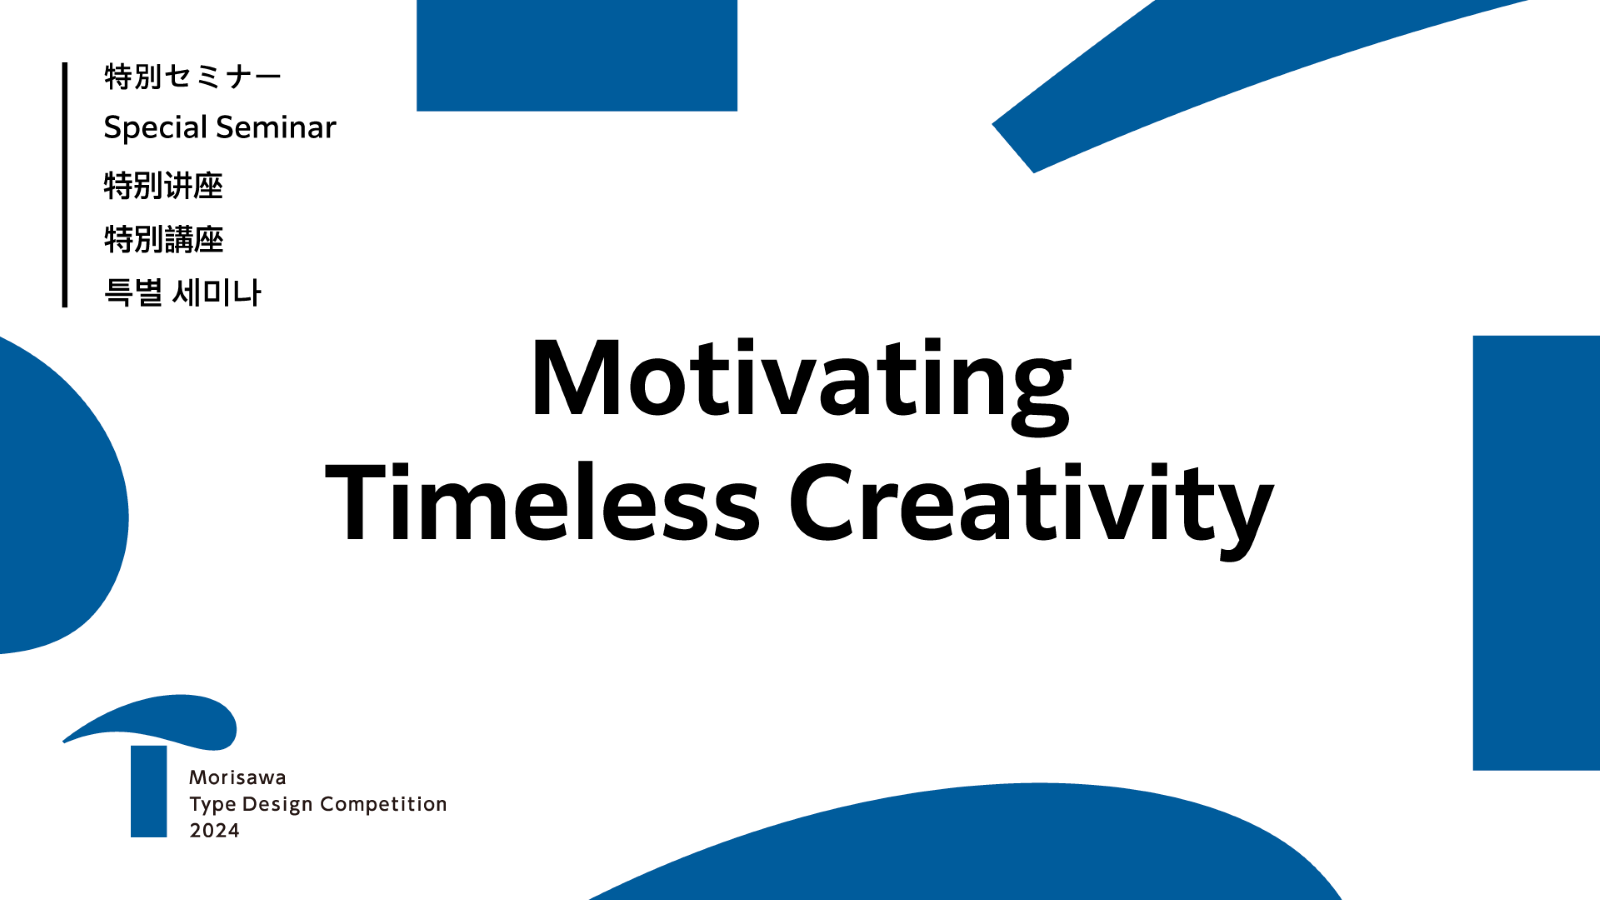 线上特别讲座「Motivating Timeless Creativity」于今日发布